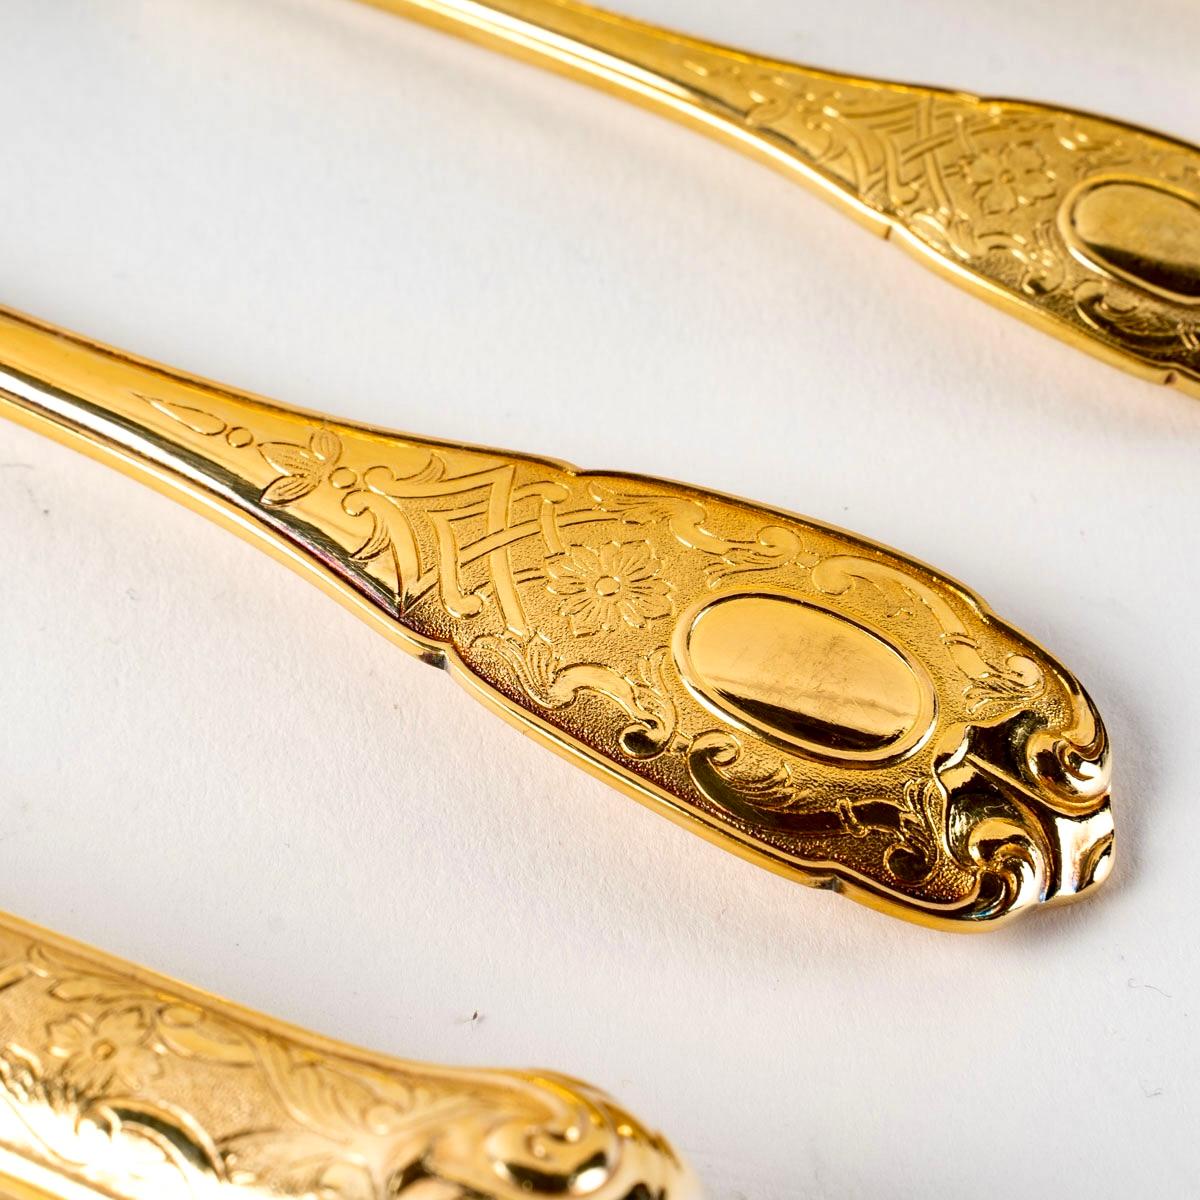 20th Century Puiforcat, Elysée Vermeil Gold Sterling Silver Flatware Cutlery Set, 70 Pieces